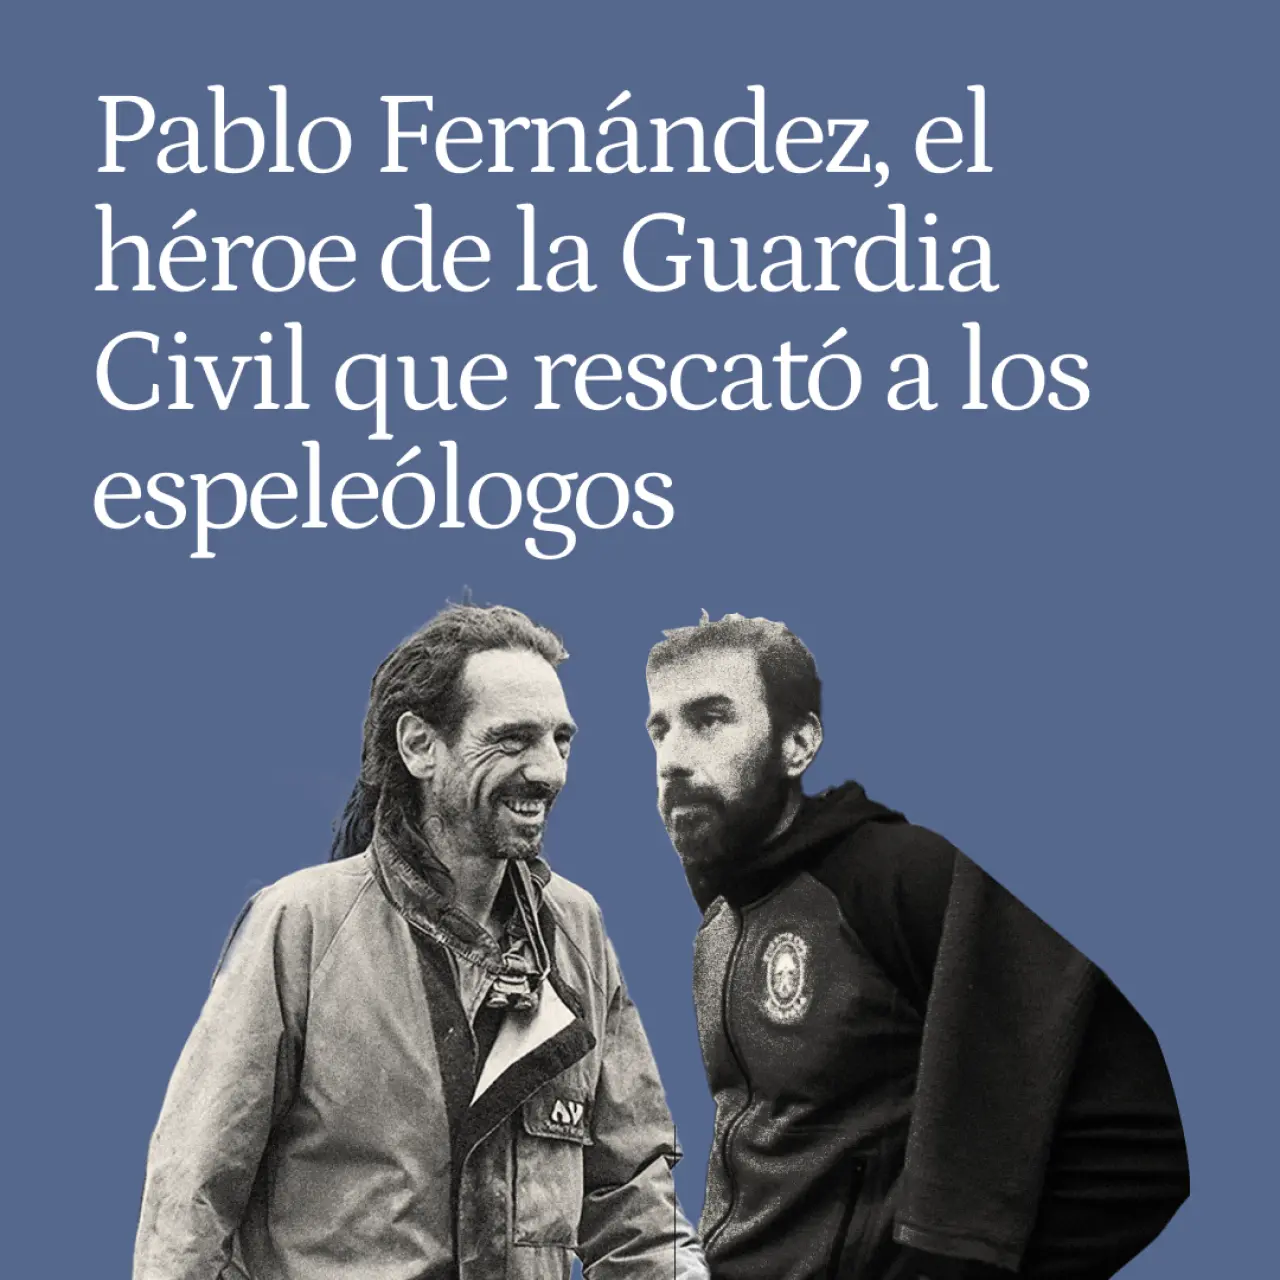 Pablo Fernández, el héroe de la Guardia Civil que ha rescatado tras 3 días a los espeleólogos en Cantabria